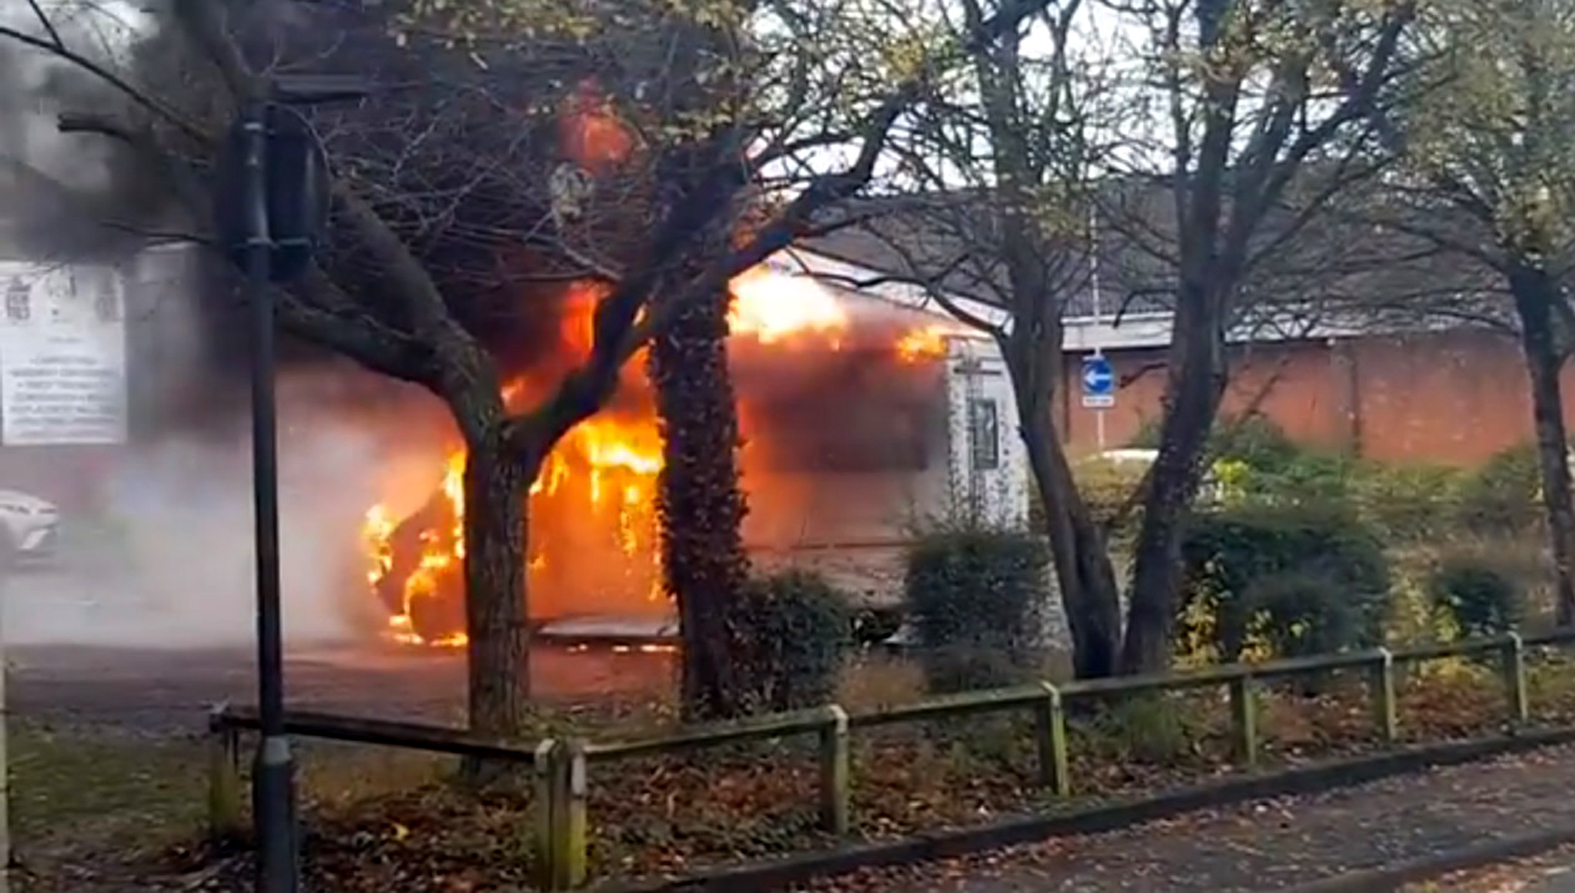 VIDEO: Firefighters battle motorhome fire on car park